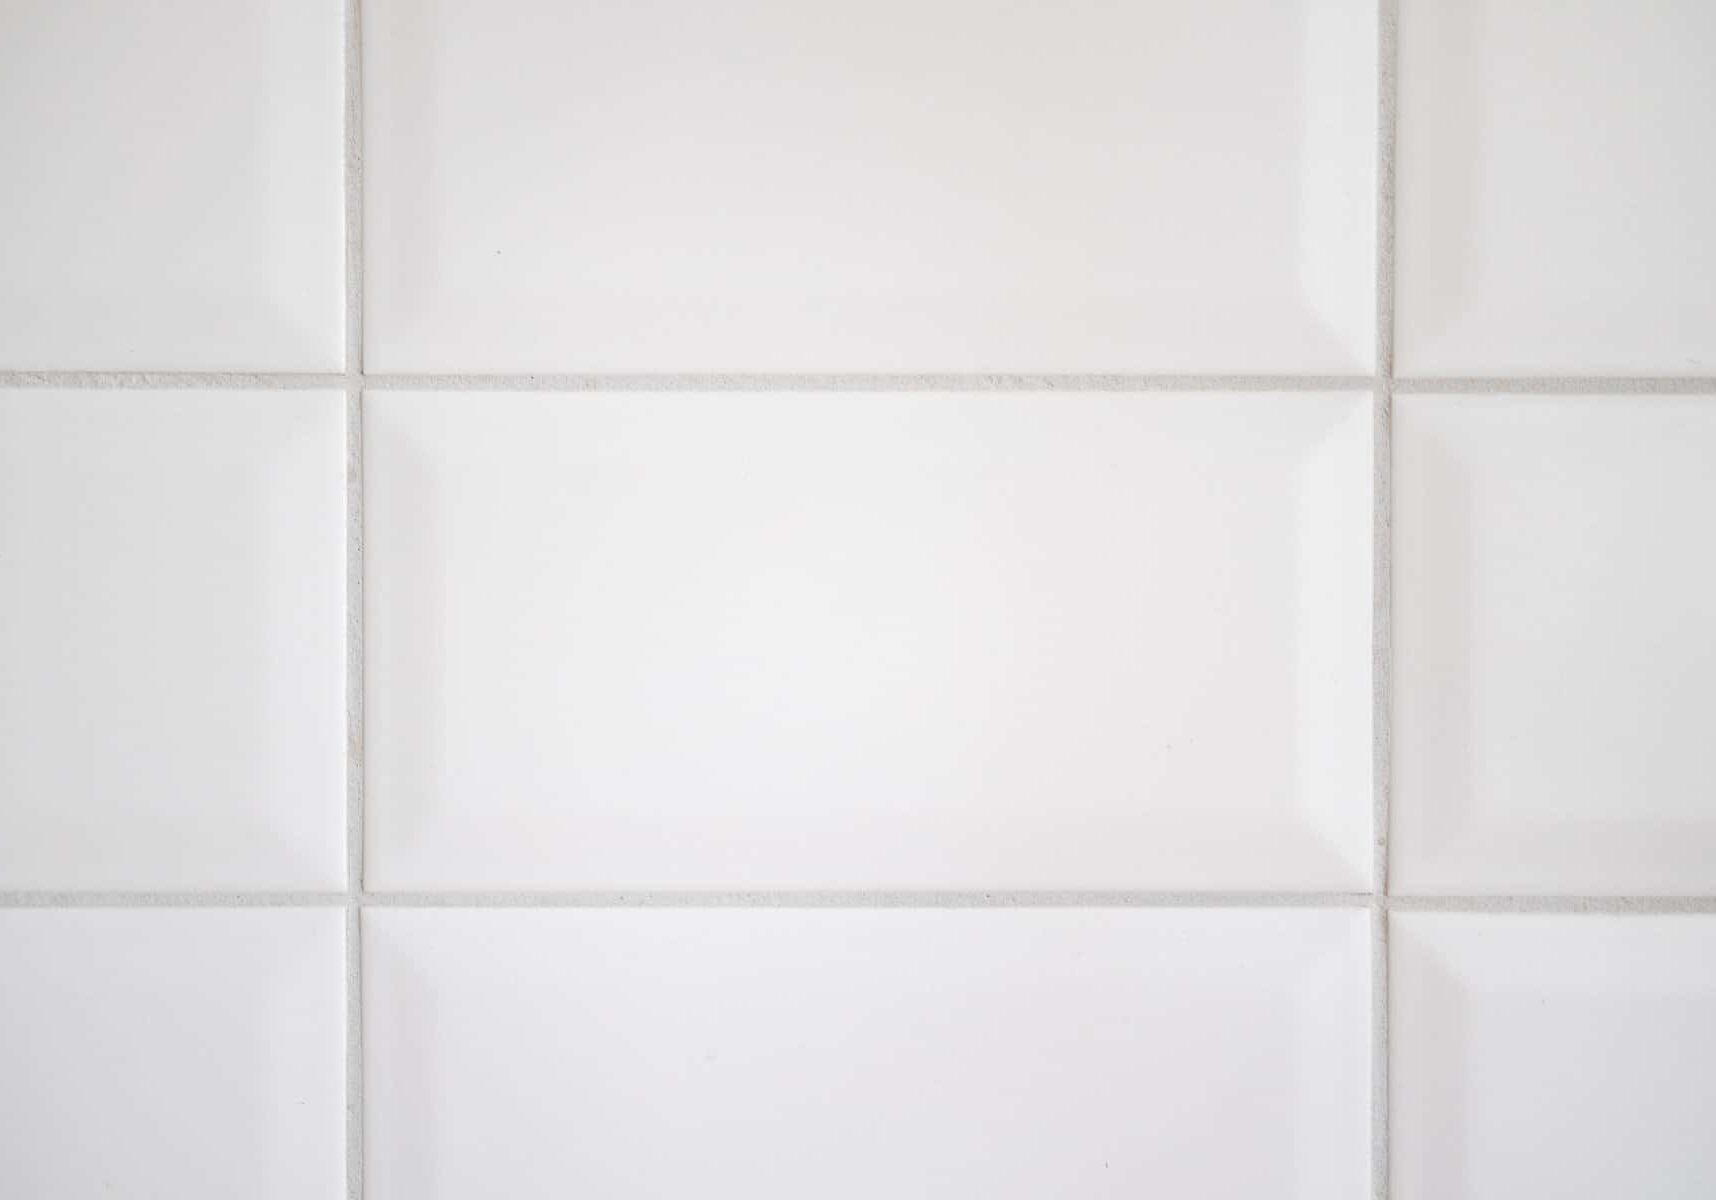 white-tile-background-in-kitchen-2022-10-17-23-27-37-utc